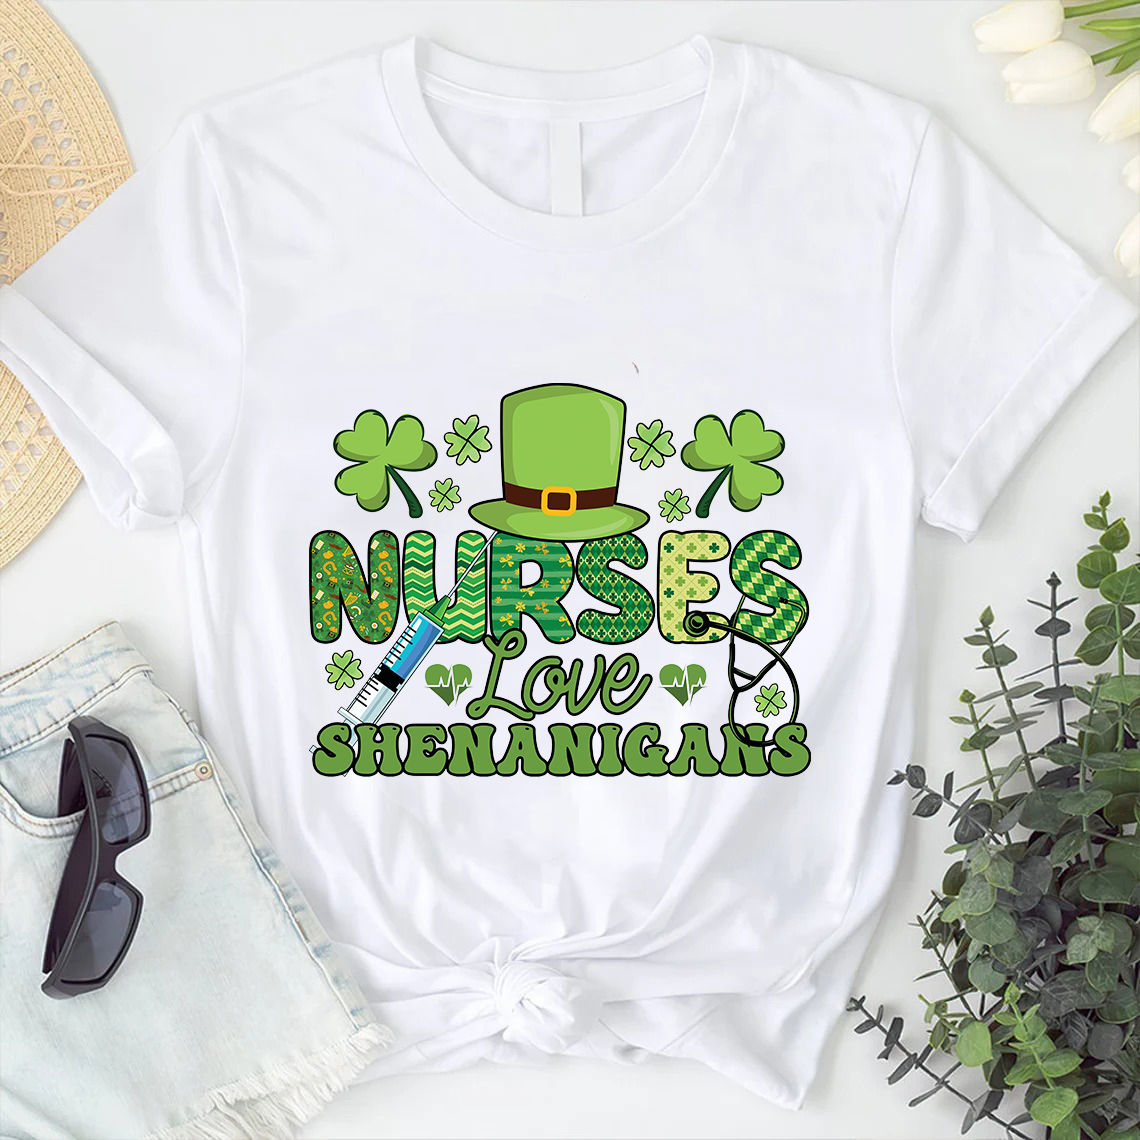 Love Nurse Shirt, Nurse T-shirt, Nurse Tees, Cute Nurse Shirts